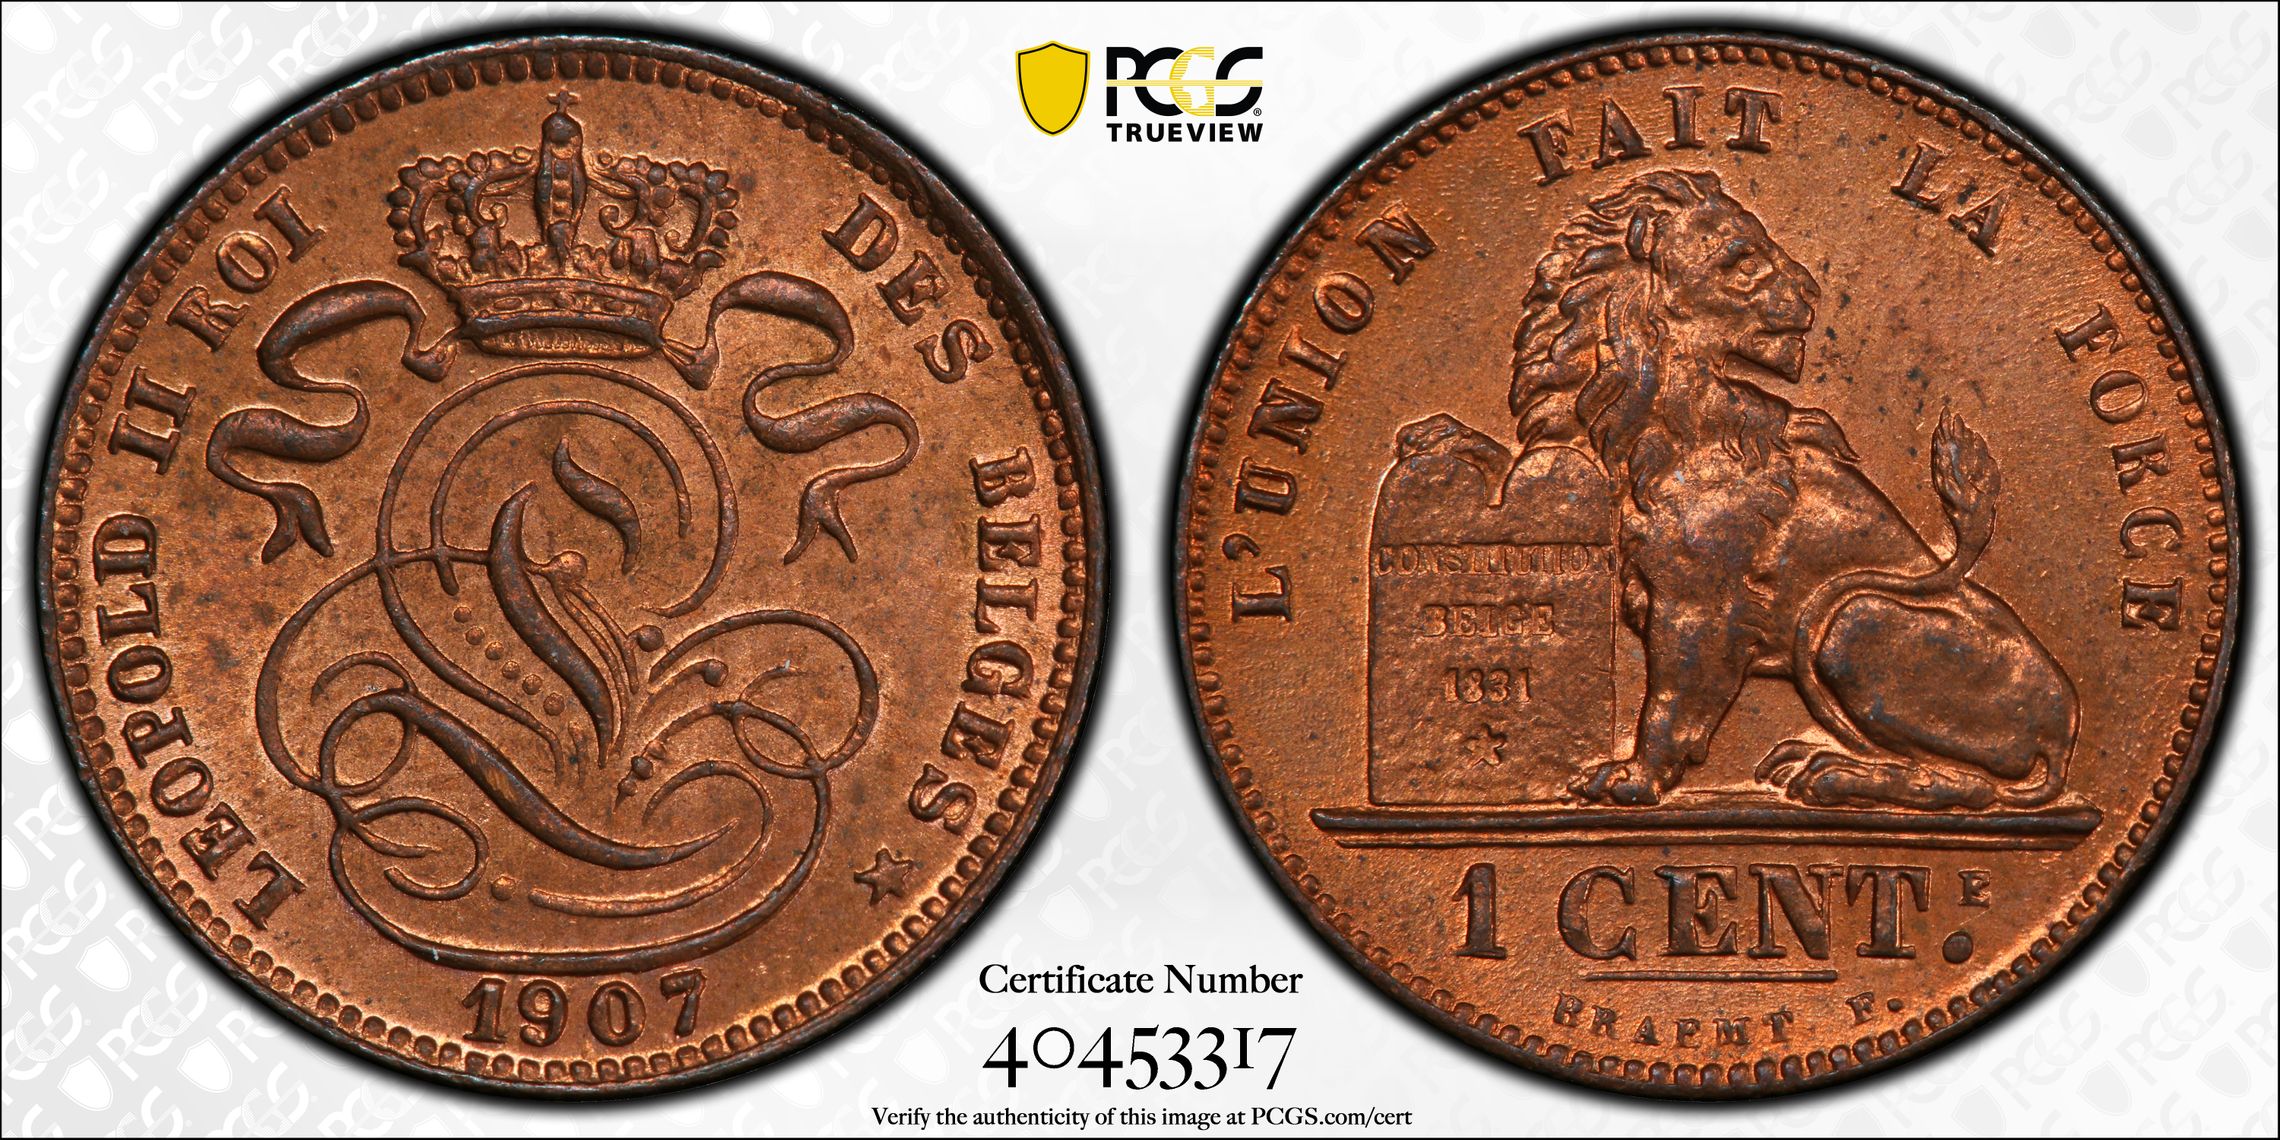 Palos Verdes Coin Exchange 40453317 Large